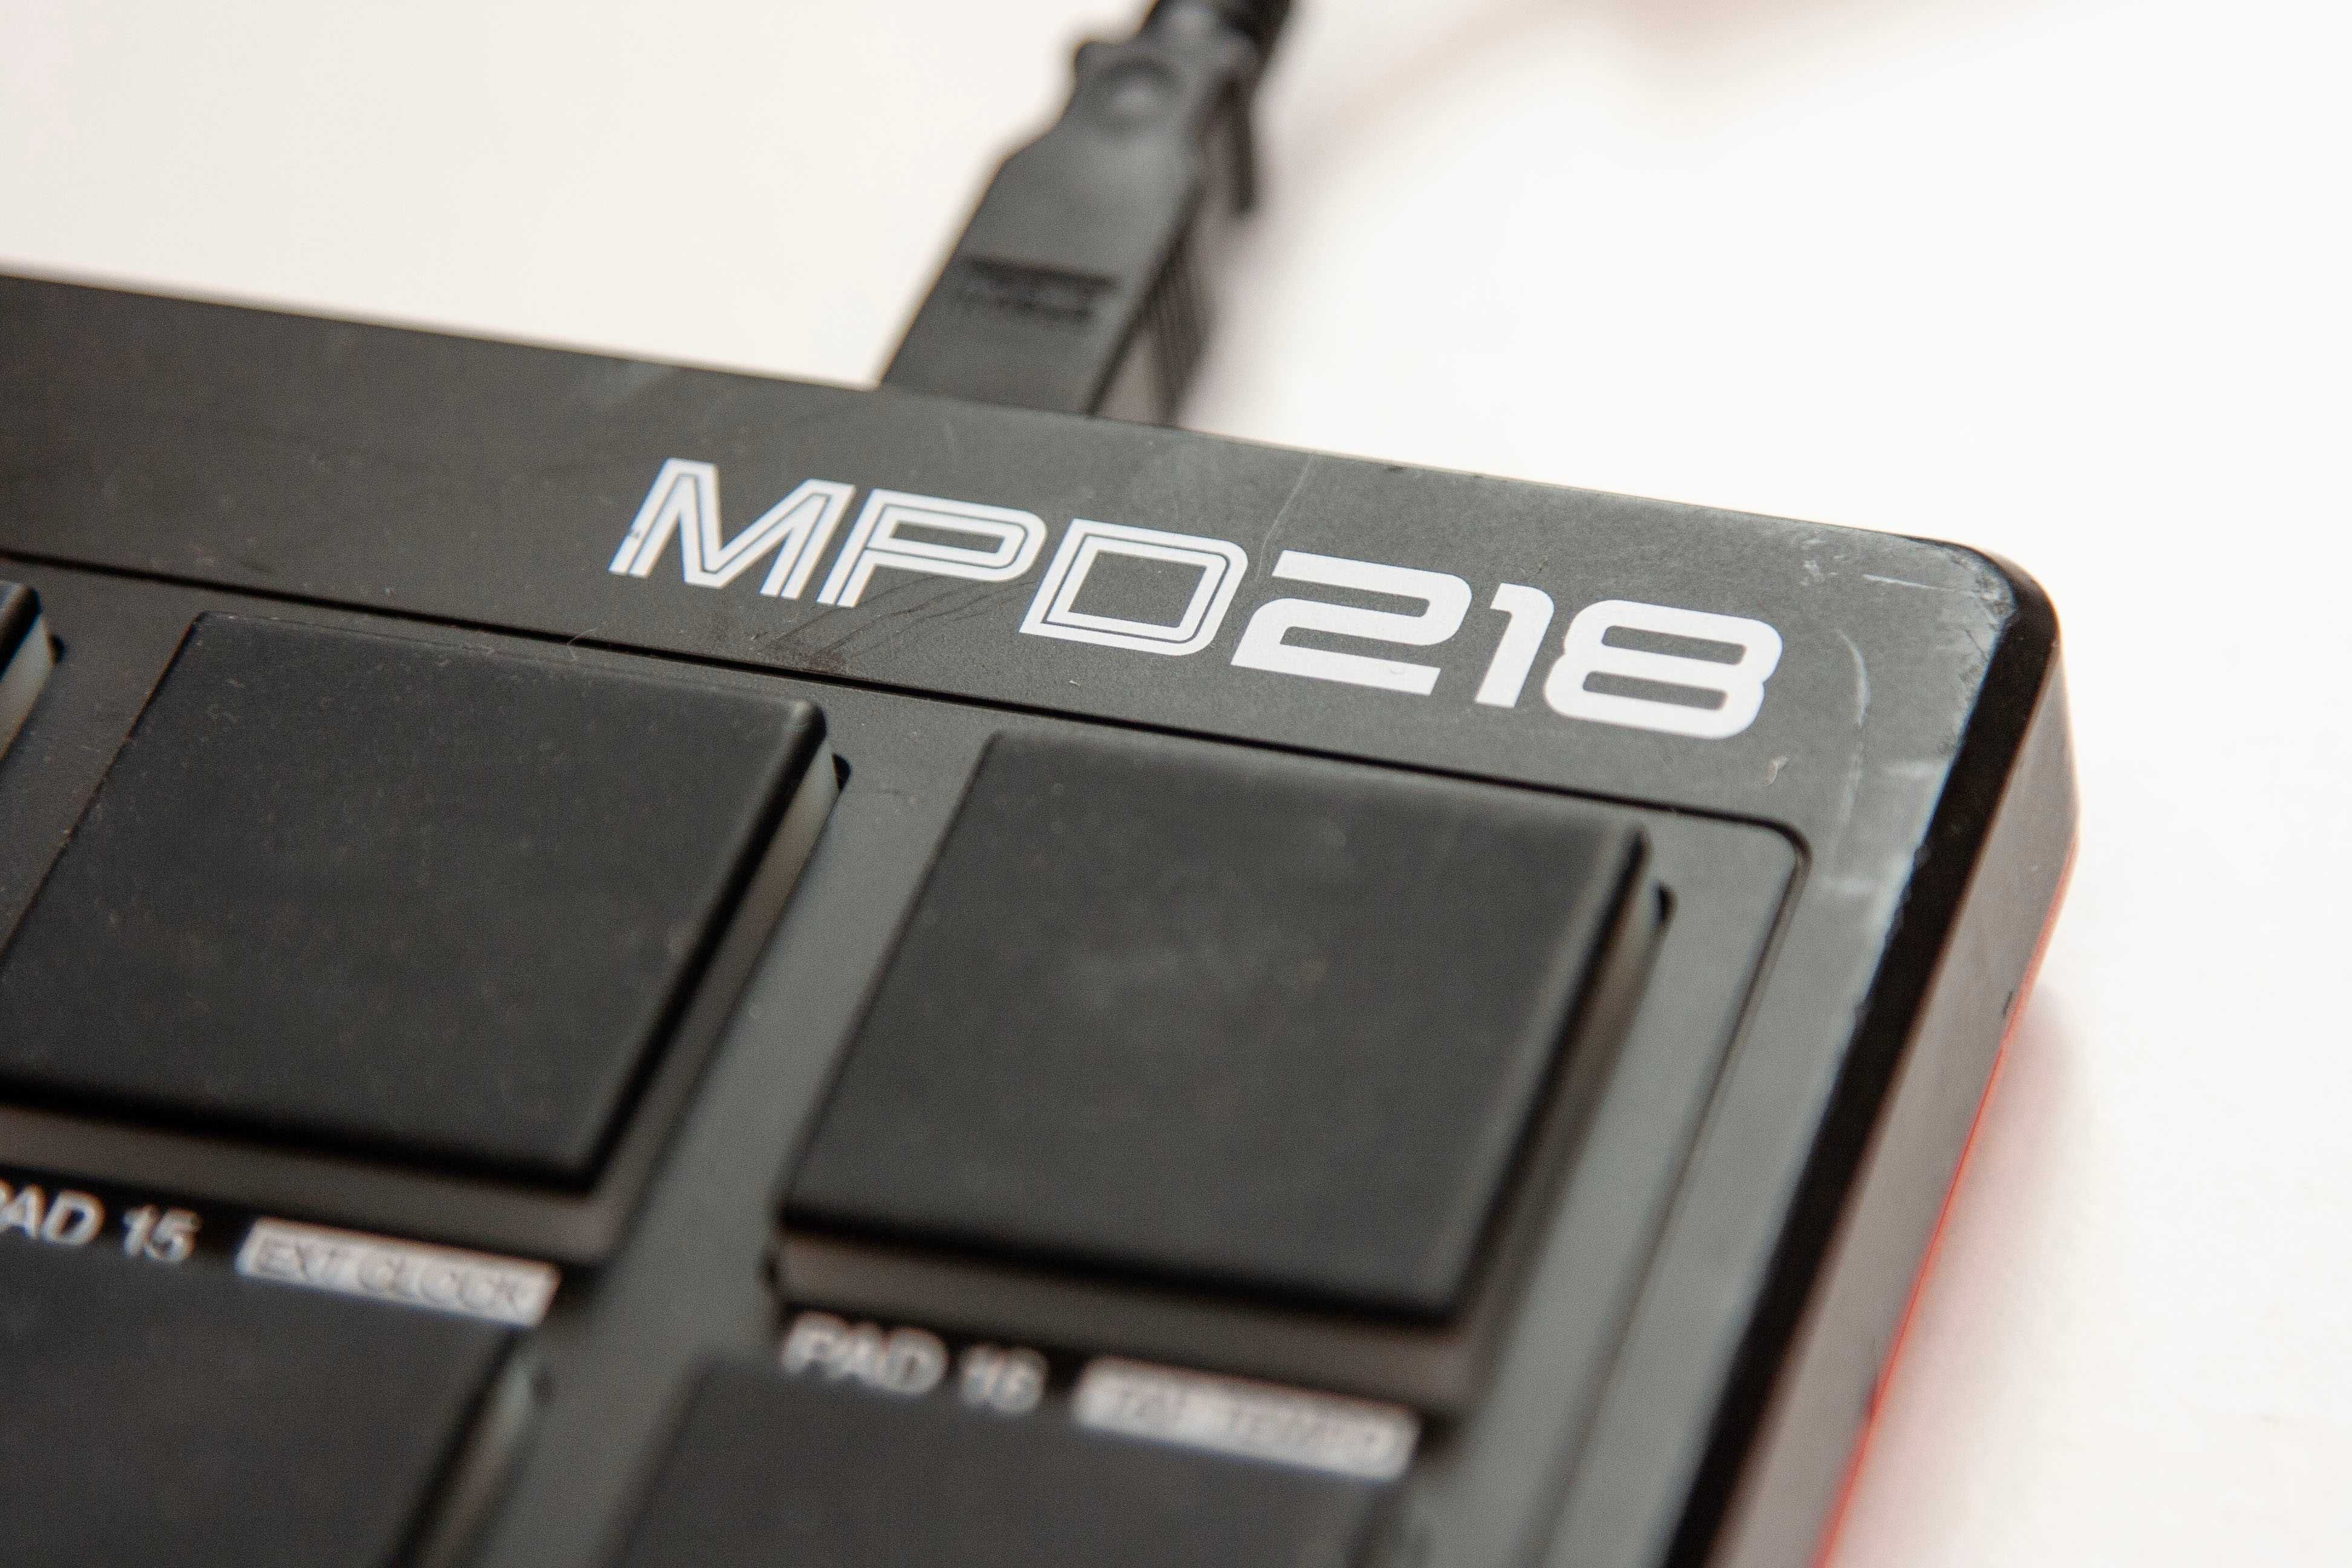 MIDI педконтролер AKAI MPD218